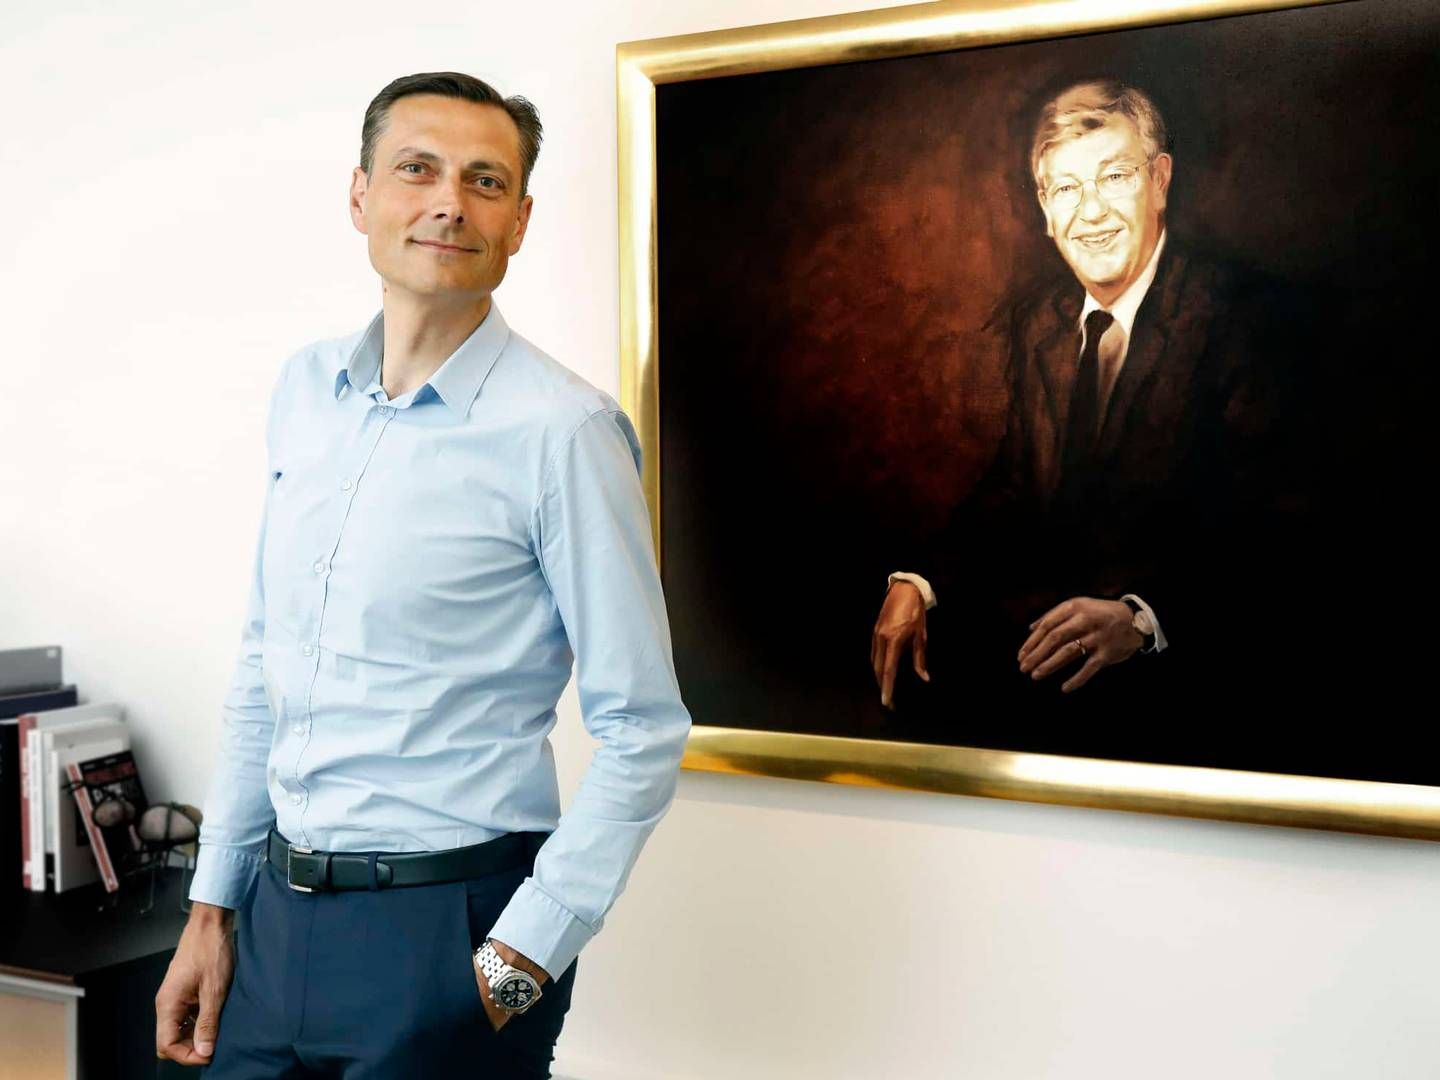 Adm. direktør Claus Omann Jensen, Færchfonden, her ved siden af et billede af en af fondens stiftere, Jørgen Færch | Foto: Pr